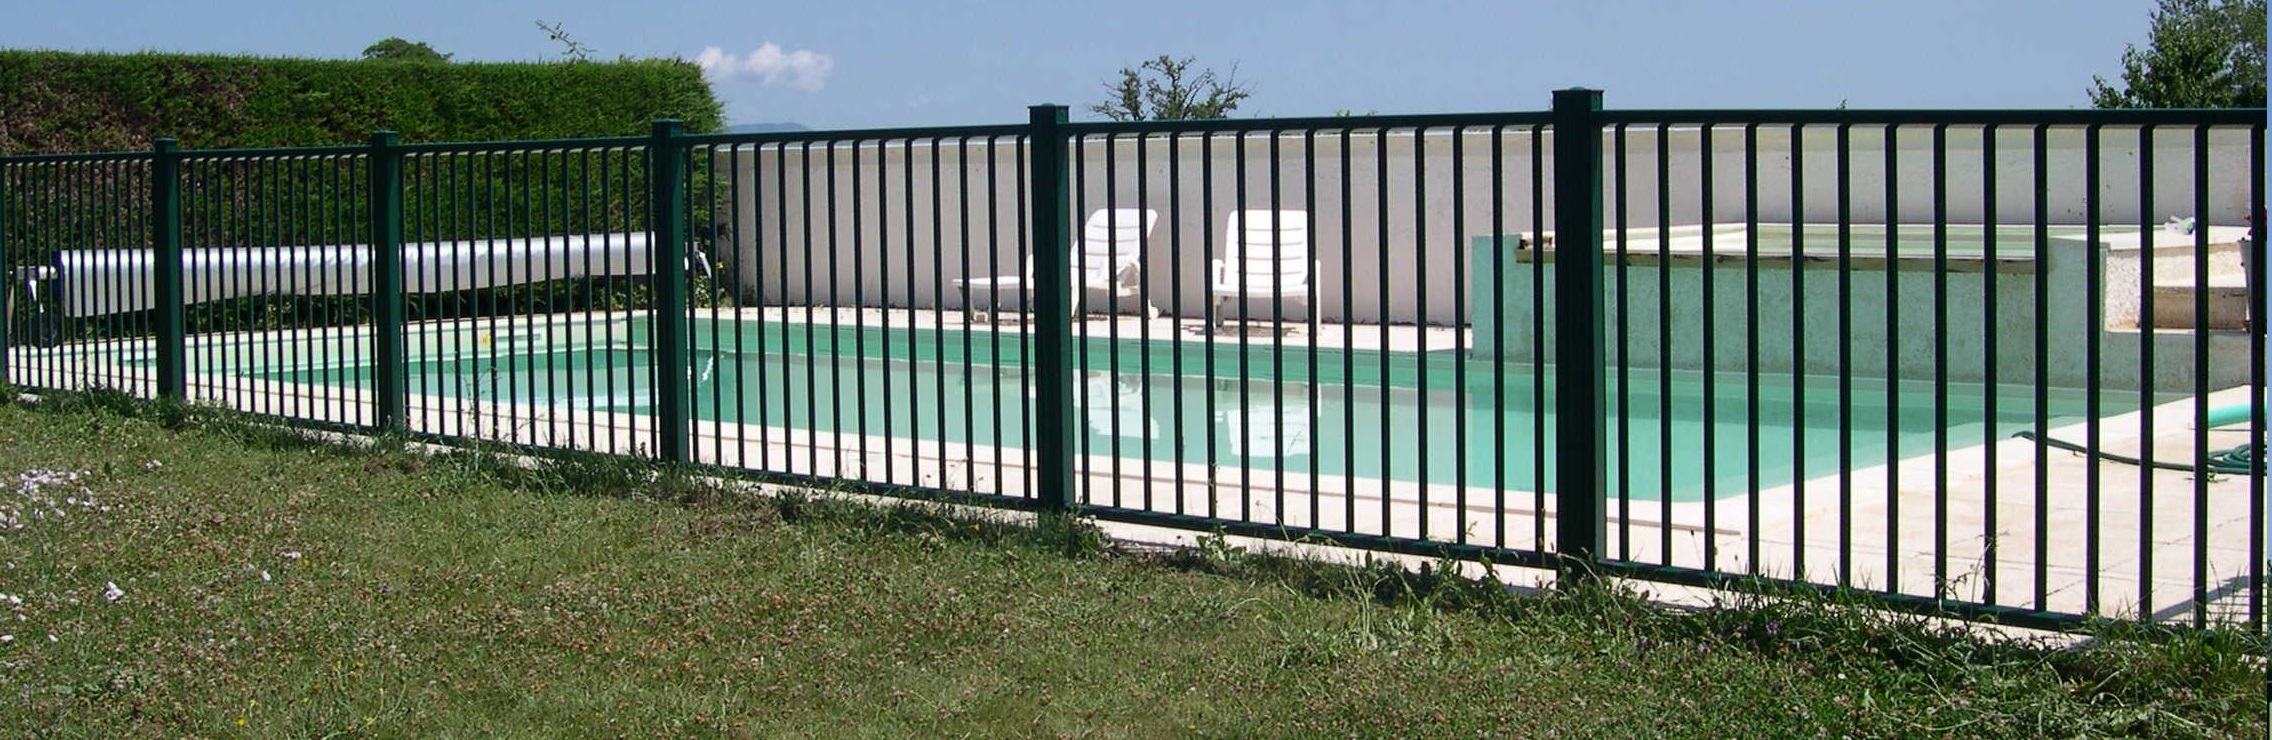 Barrière piscine sécurité - Piscine & Jardin